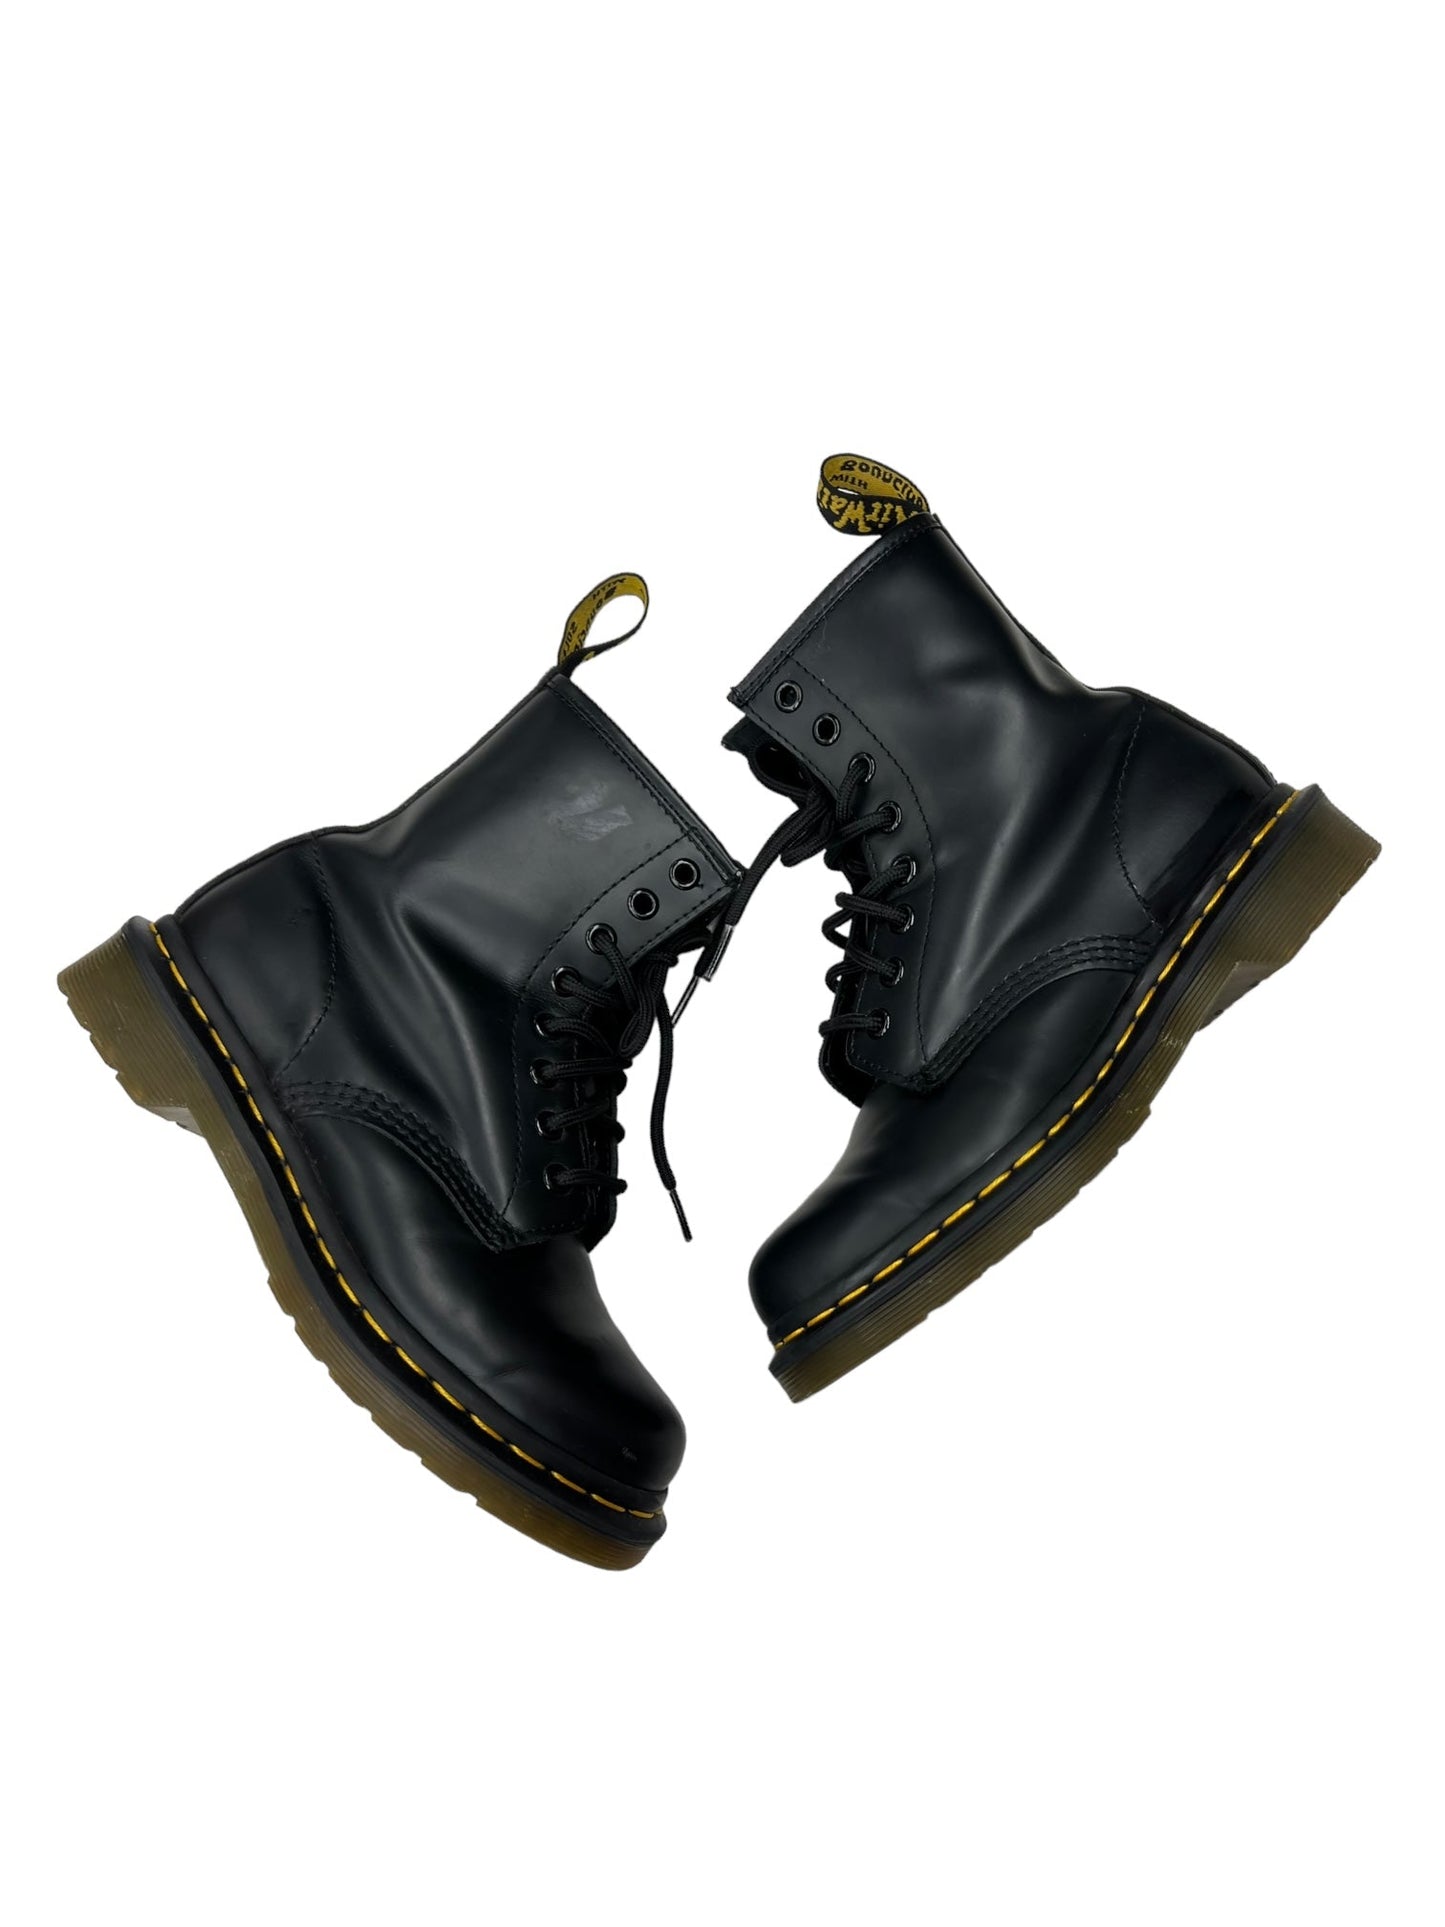 Black Boots Combat Dr Martens, Size 5